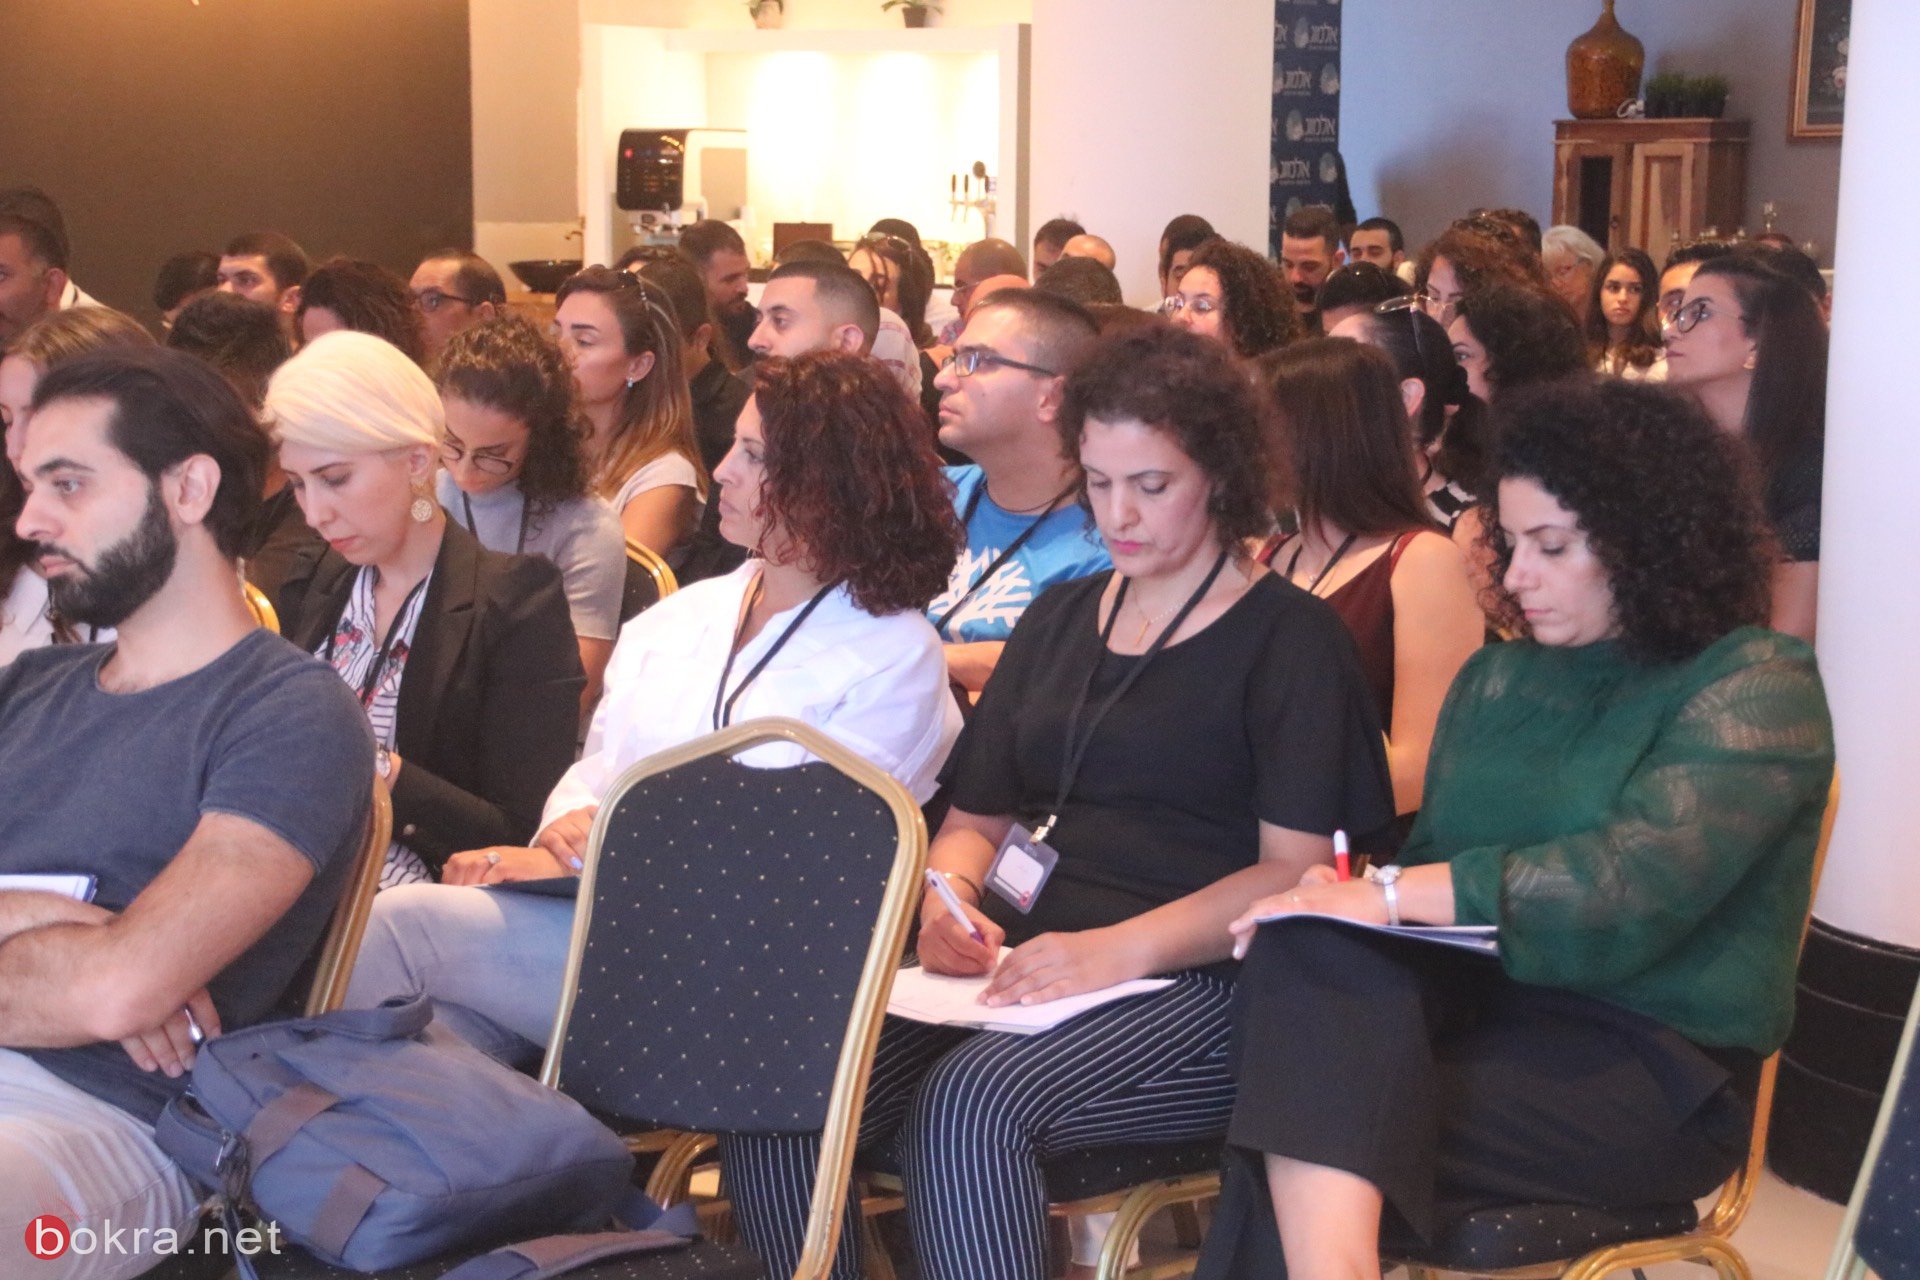 حيفا: مشاركة واسعة في مؤتمر "وصول" حول آخر التطورات في قنوات التسويق الرقمي-13